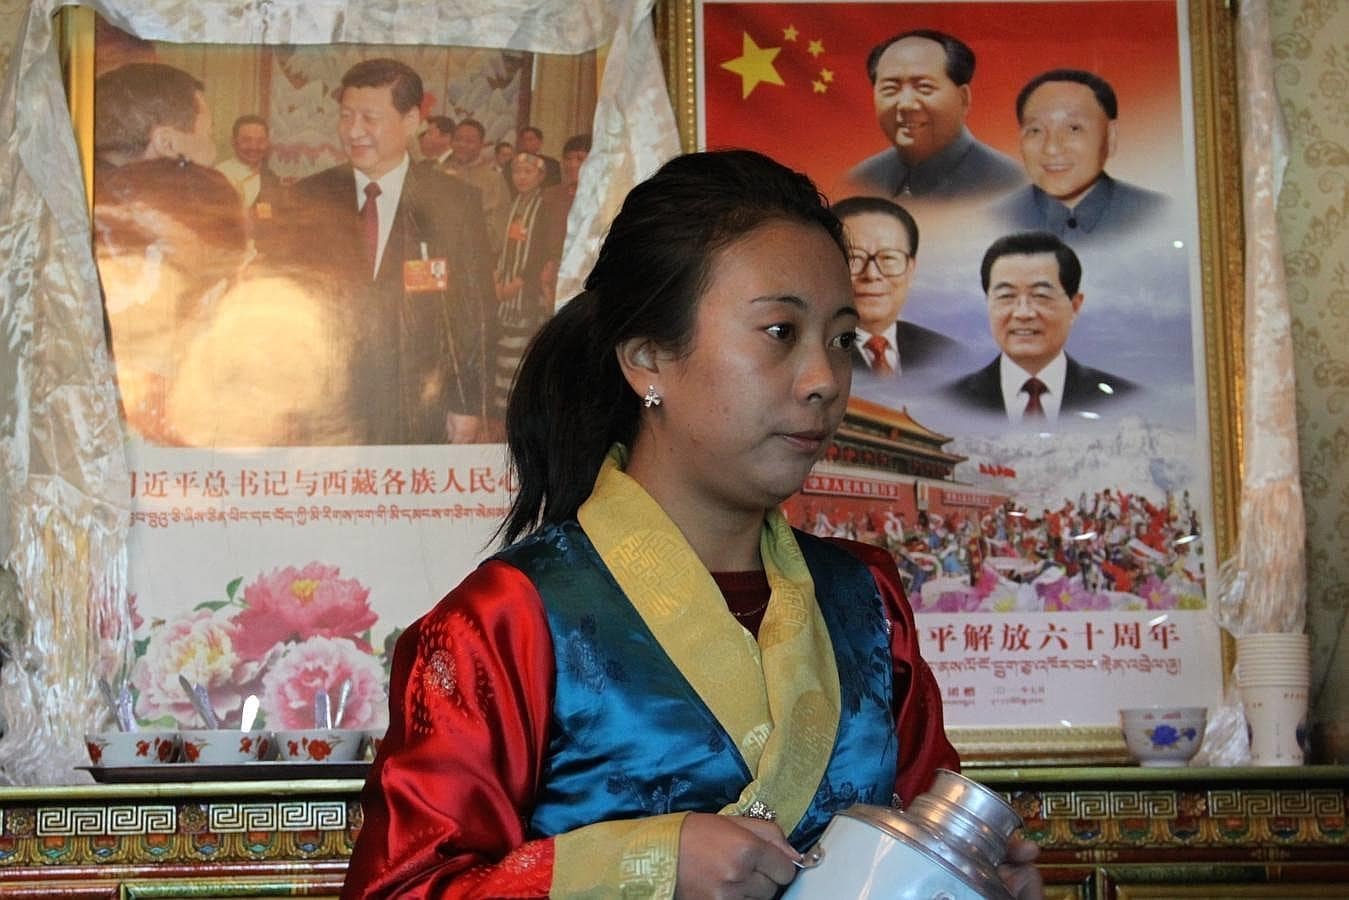 La propaganda del Partido Comunista abunda en Tíbet